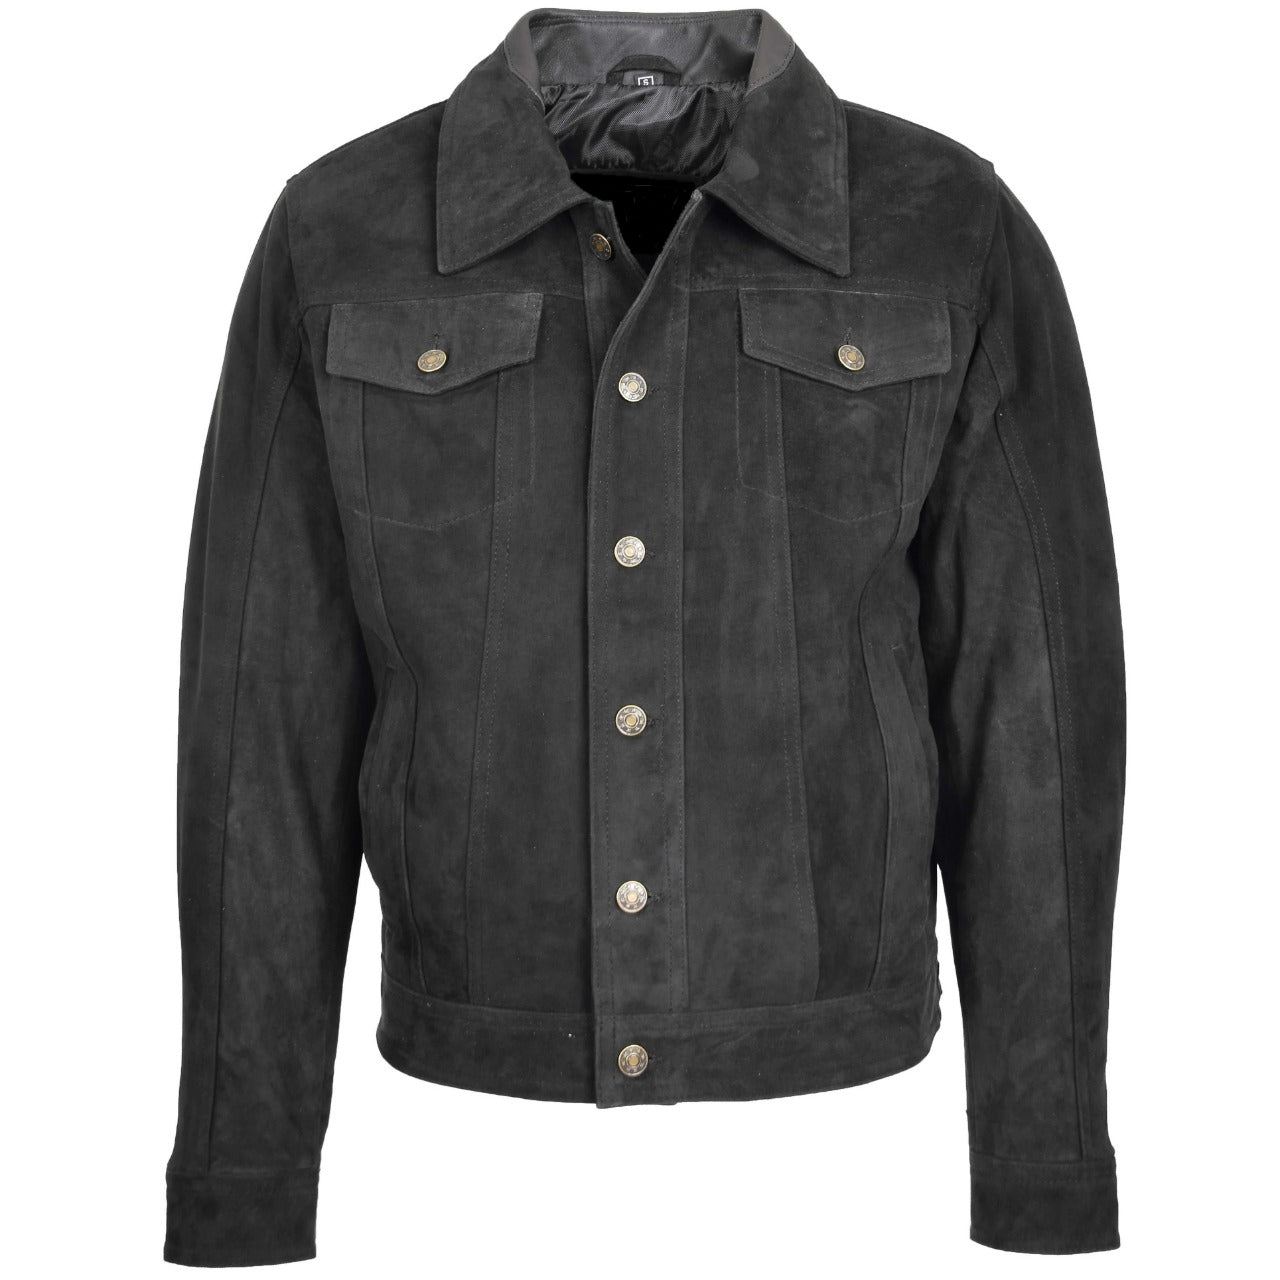 Black Suede Leather Jacket Men